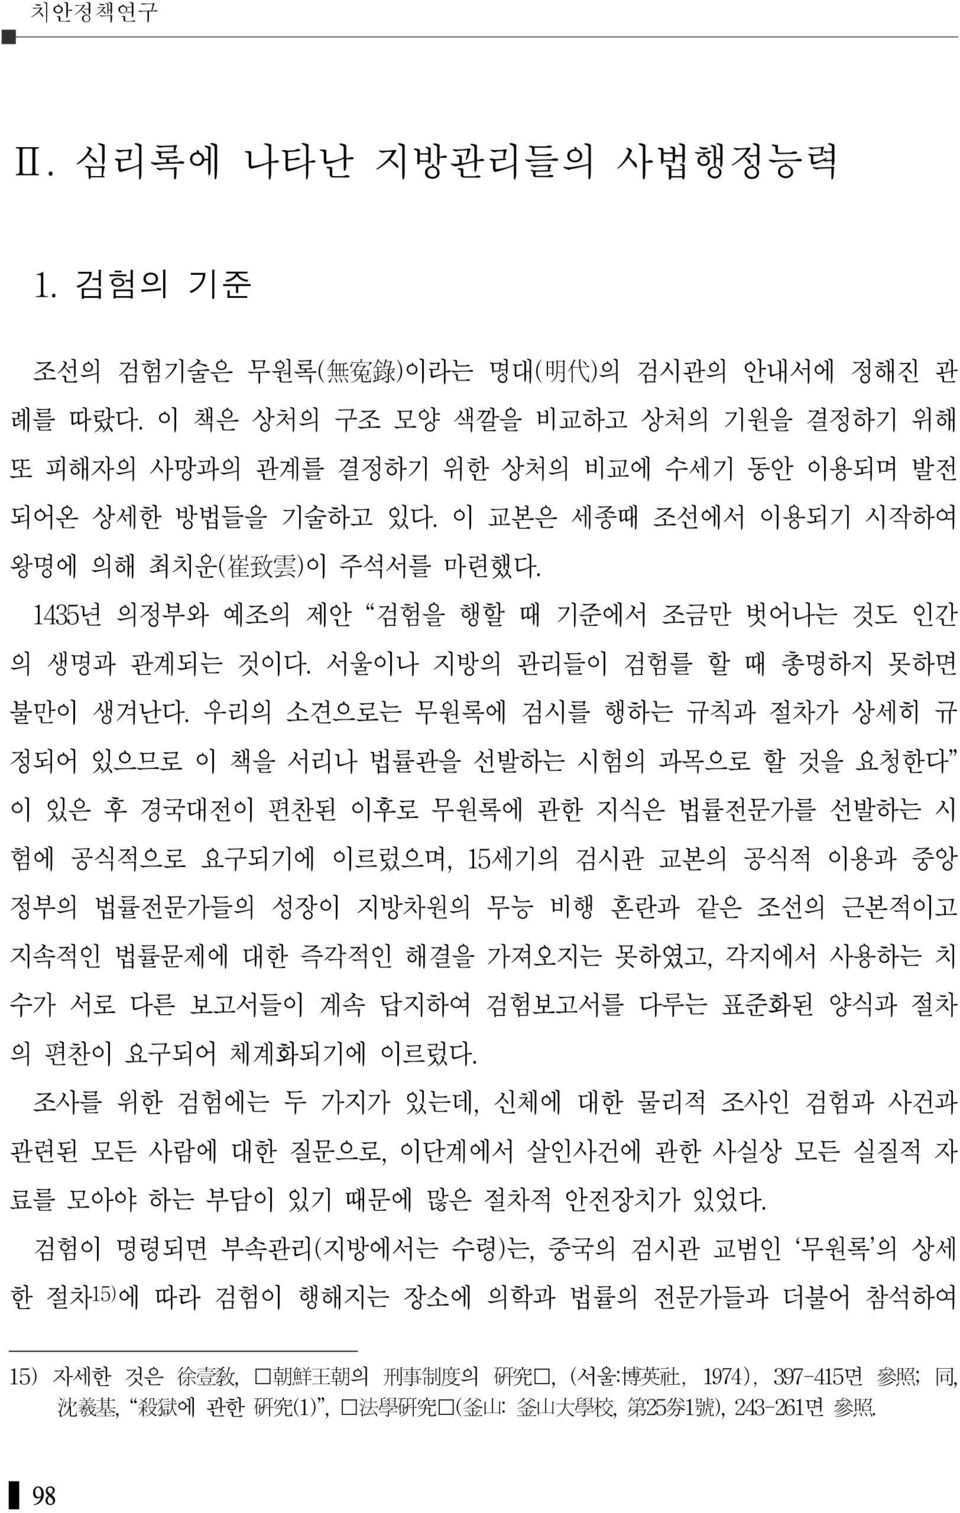 1435년 의정부와 예조의 제안 검험을 행할 때 기준에서 조금만 벗어나는 것도 인간 의 생명과 관계되는 것이다. 서울이나 지방의 관리들이 검험를 할 때 총명하지 못하면 불만이 생겨난다.